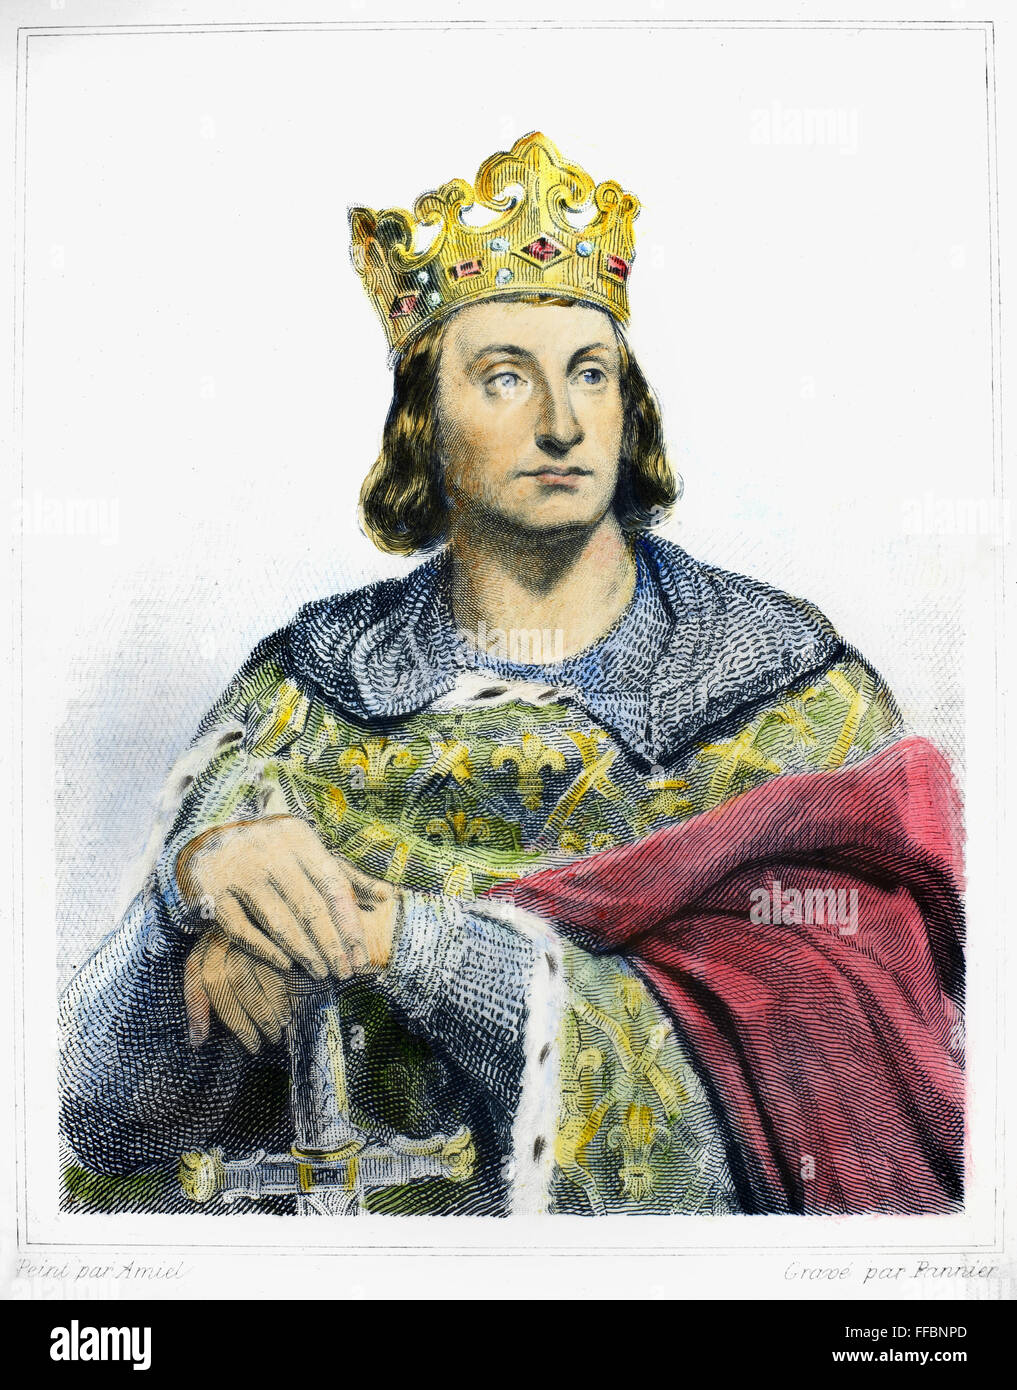 Philippe II (1165-1223). /NKnown que Philippe Auguste. Roi de France, 1180-1223. Gravure sur acier, le français, 19e siècle. Banque D'Images